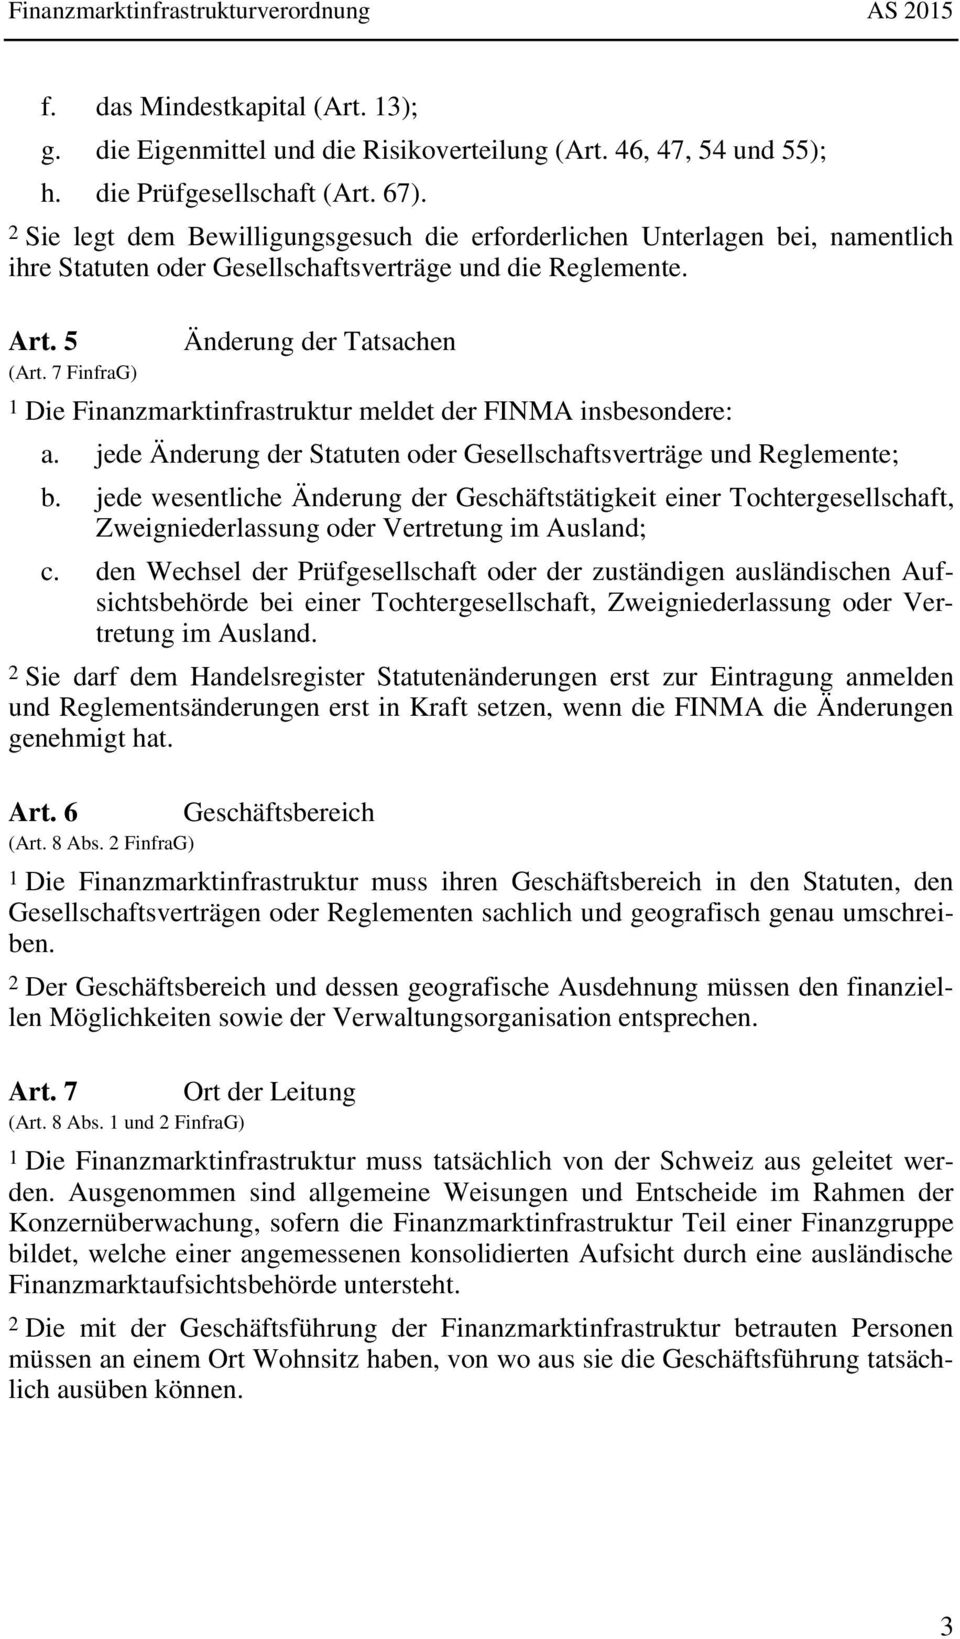 7 FinfraG) Änderung der Tatsachen 1 Die Finanzmarktinfrastruktur meldet der FINMA insbesondere: a. jede Änderung der Statuten oder Gesellschaftsverträge und Reglemente; b.